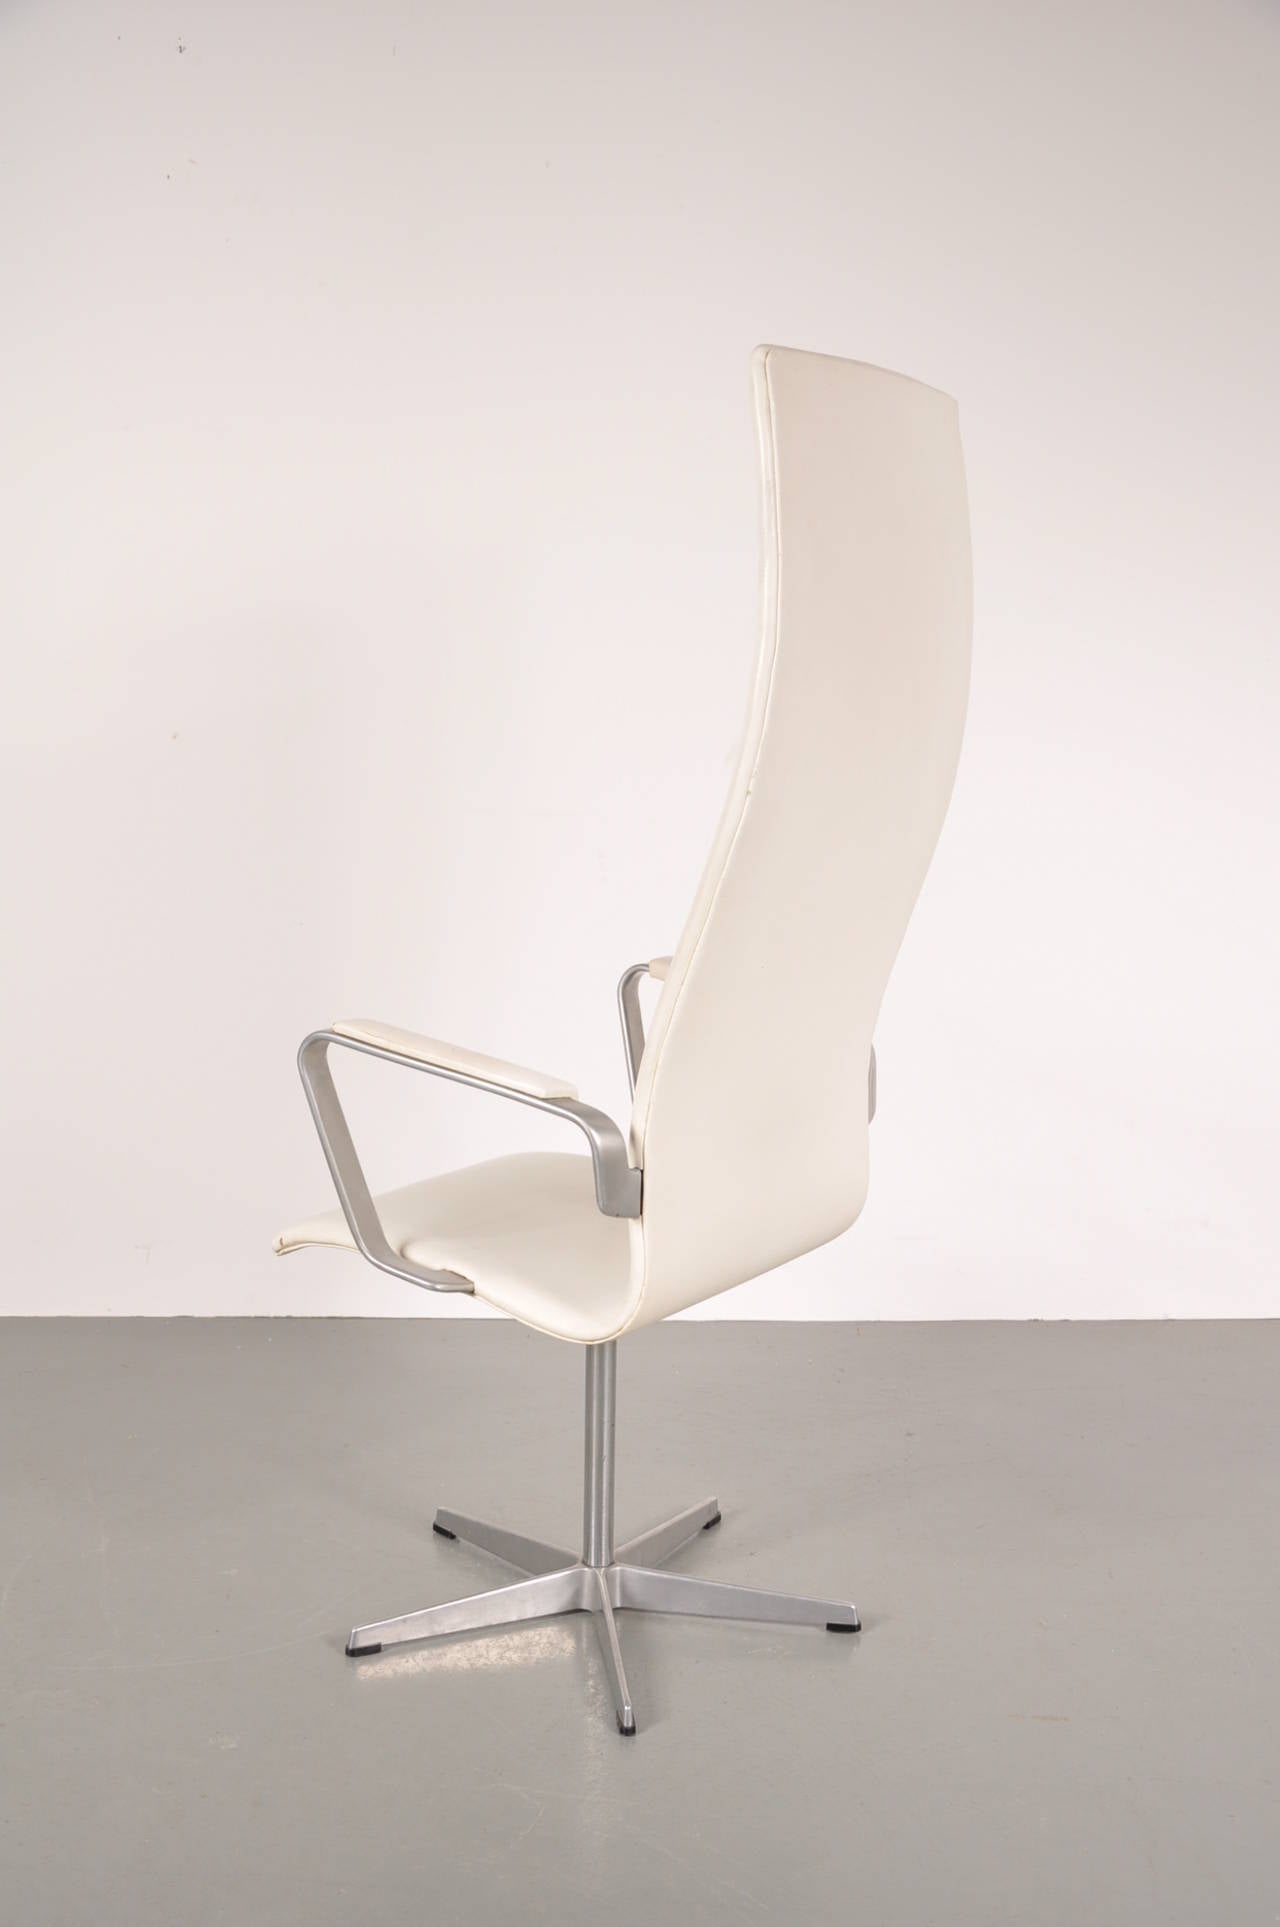 Stunning high back office swivel chair by Arne Jacobsen, model 